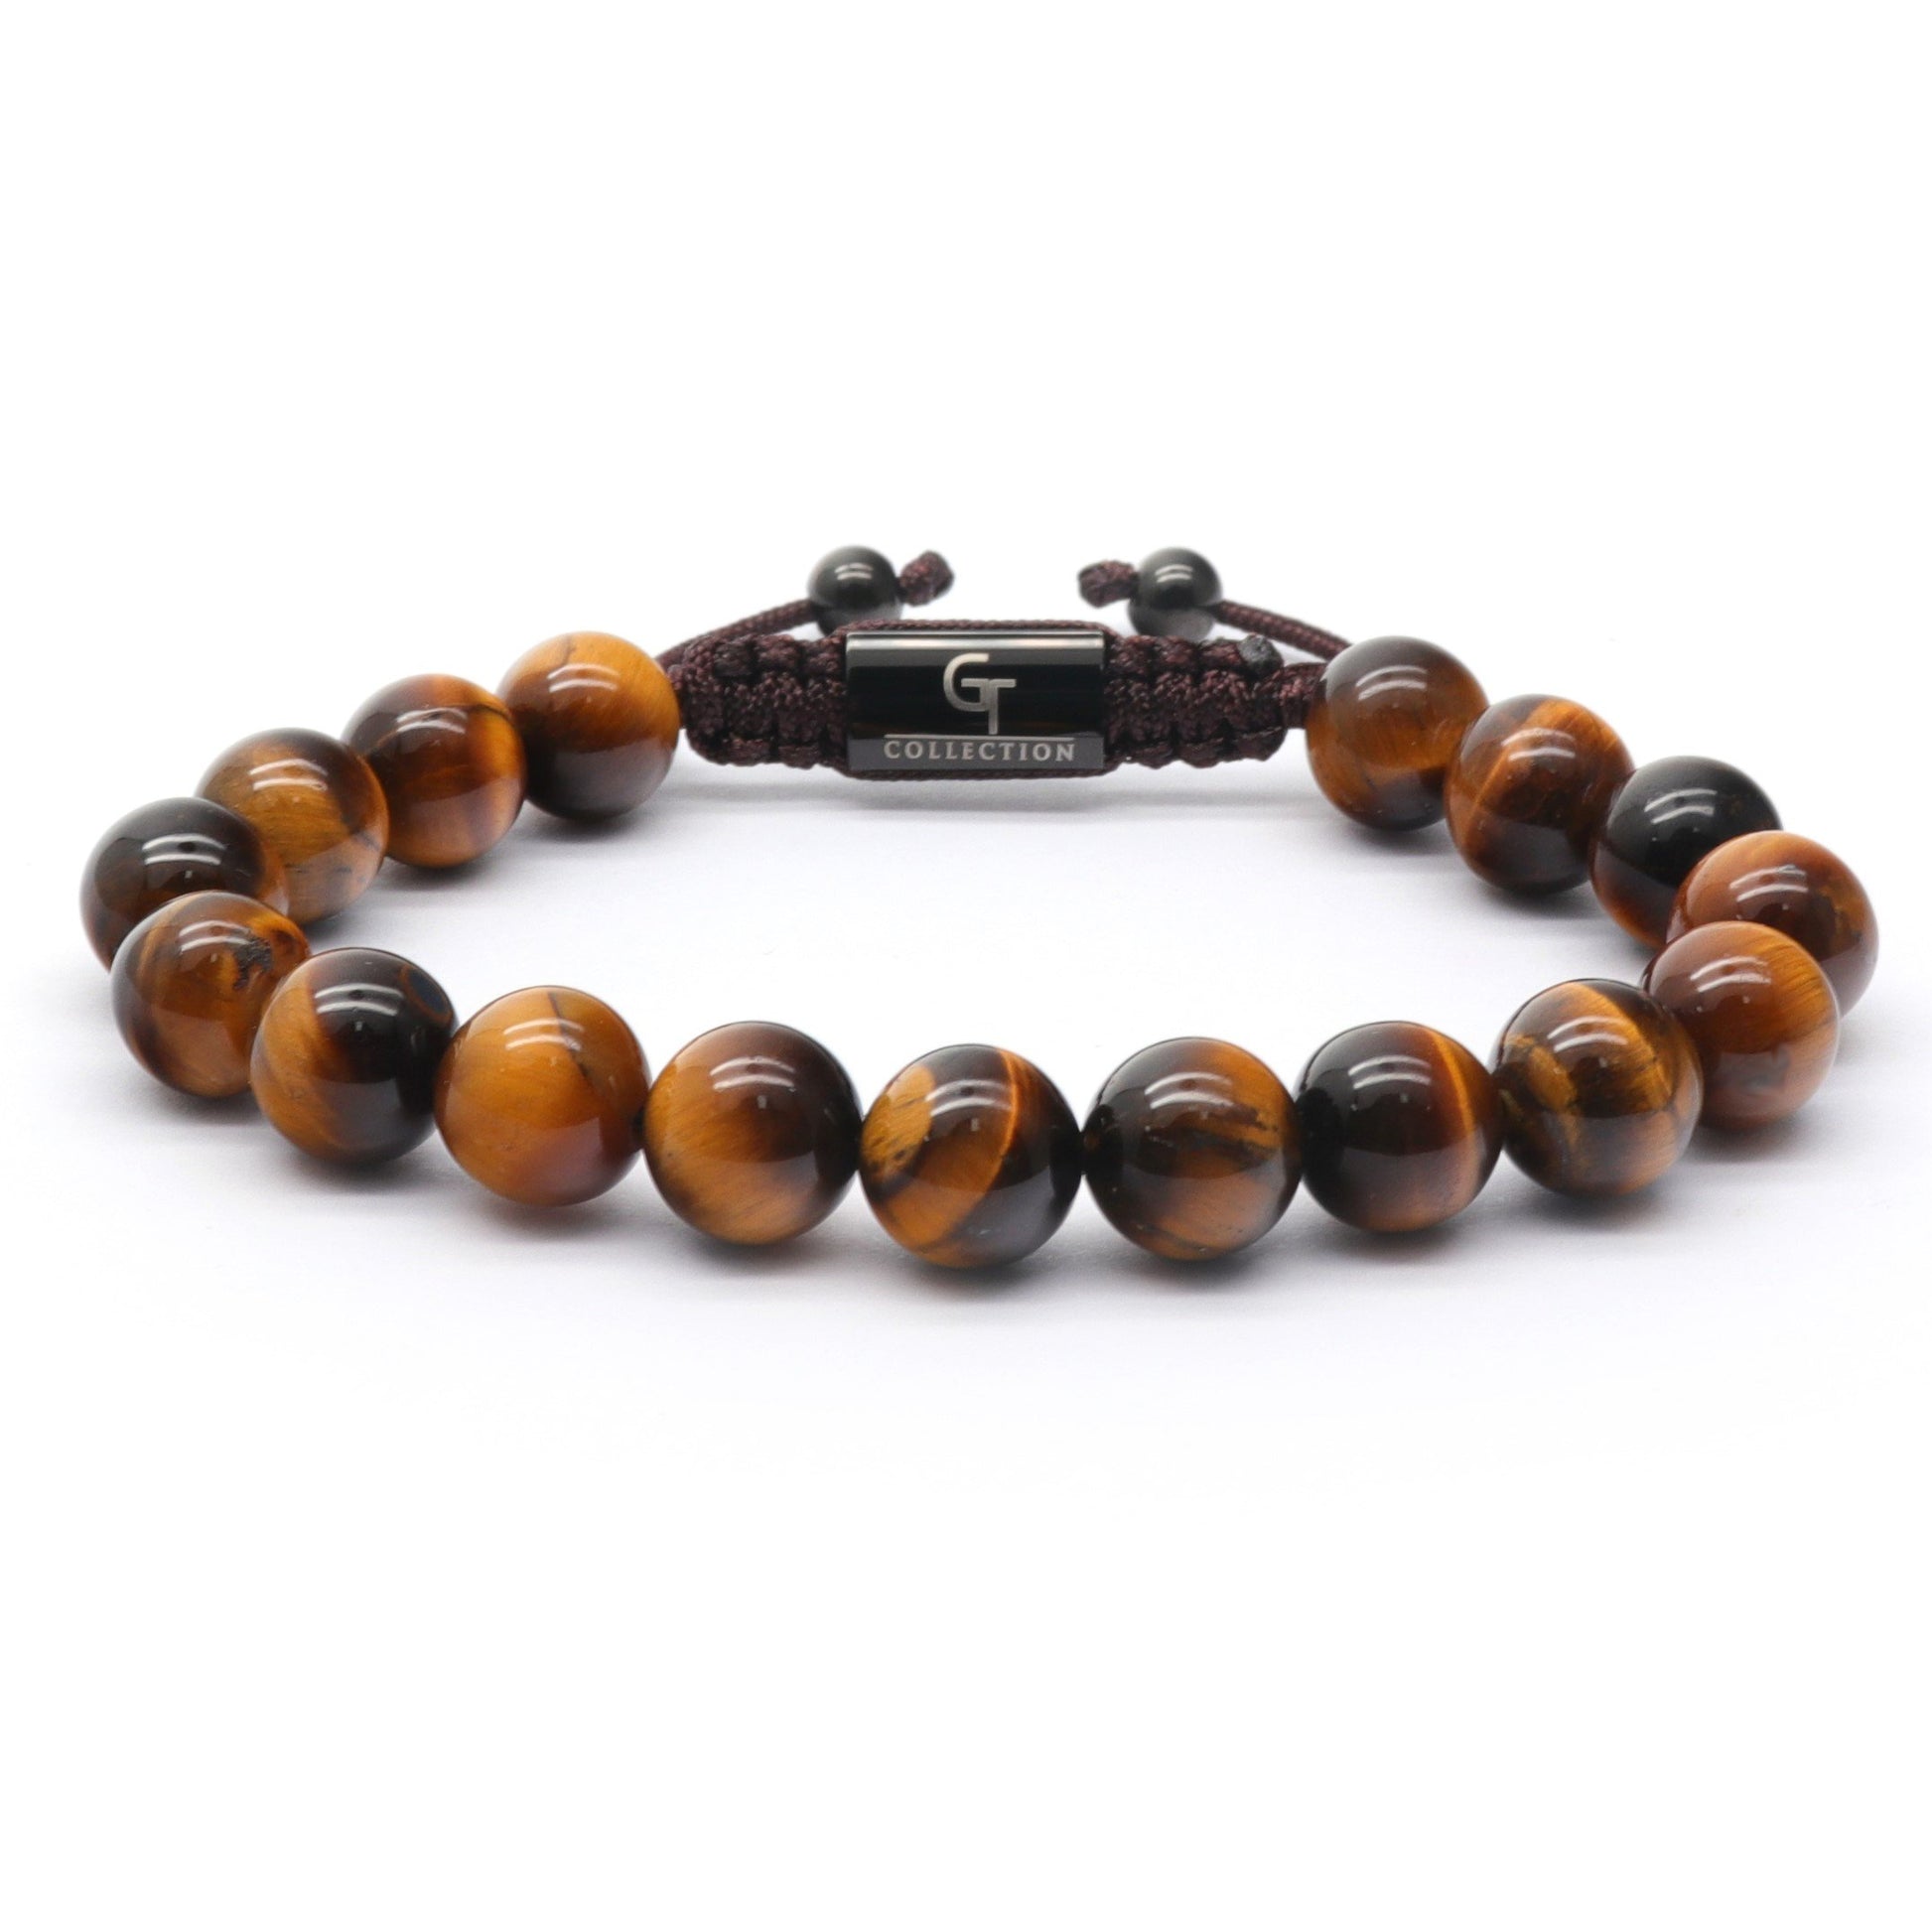 https://gt-collection.com/cdn/shop/products/bracelet-men-s-tiger-eye-beaded-bracelet-brown-gemstones-1.jpg?v=1640016143&width=1946